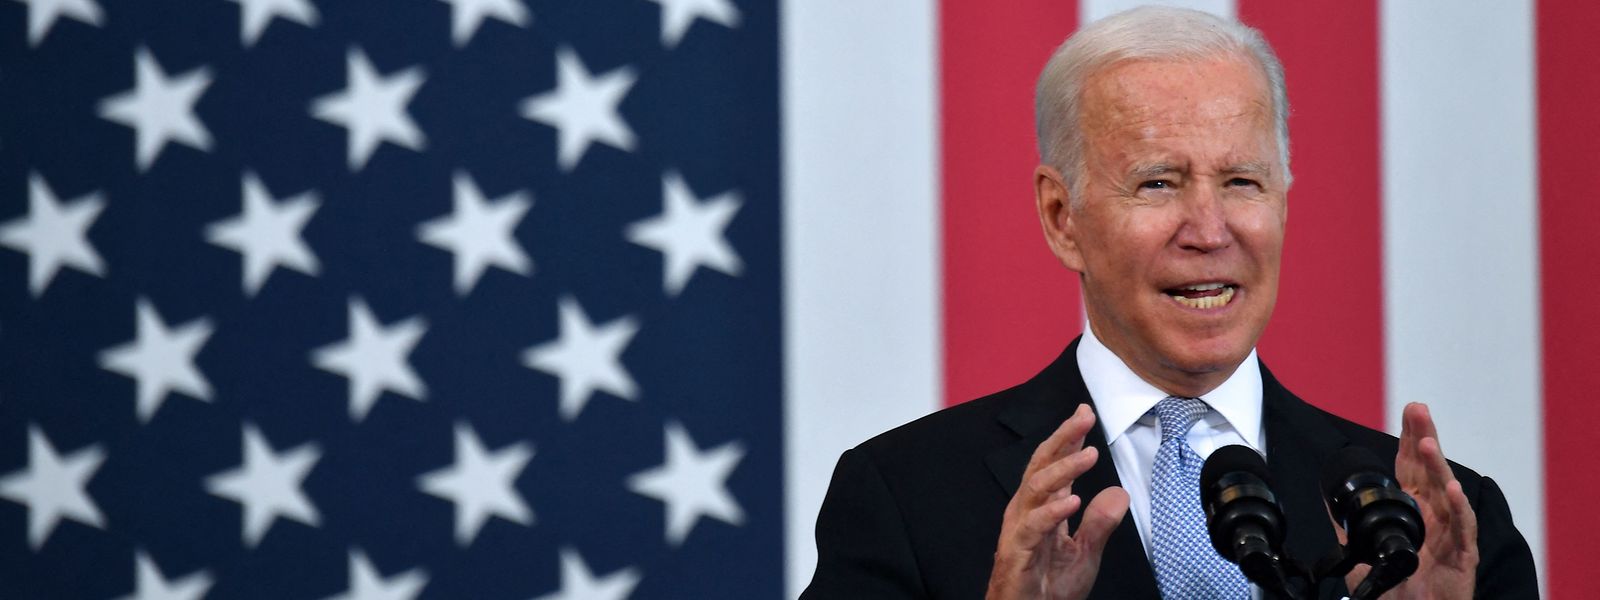 Même si Joe Biden est le plus vieux président de l'histoire des Etats-Unis (79 ans), il a fait savoir publiquement qu'il comptait postuler à sa propre succession en 2024.